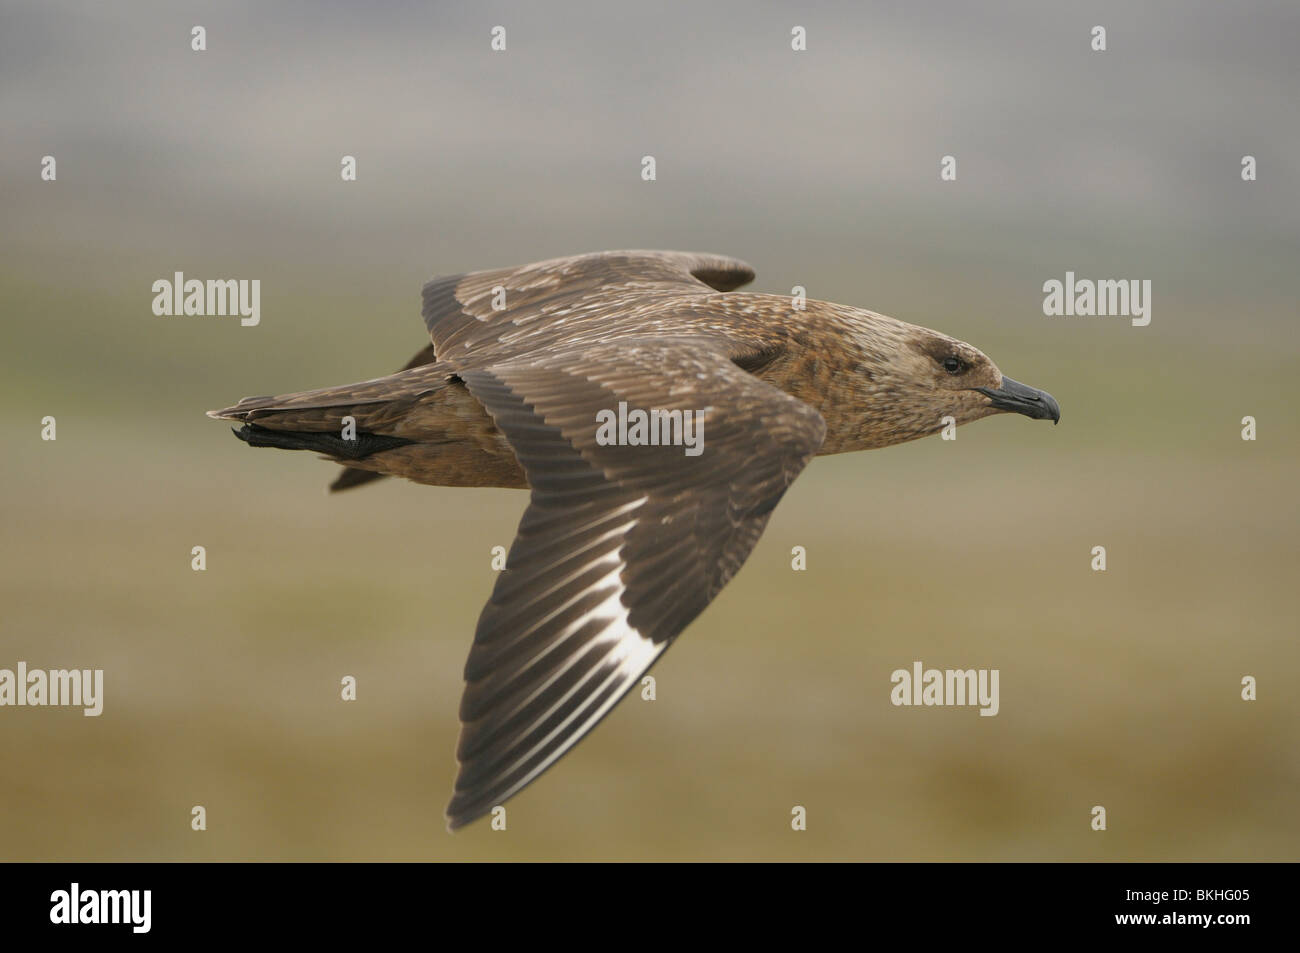 Vliegbeeld volwassen Grote Jager, bovenaanzicht vleugels; Great Skua in flight, upwing view Stock Photo